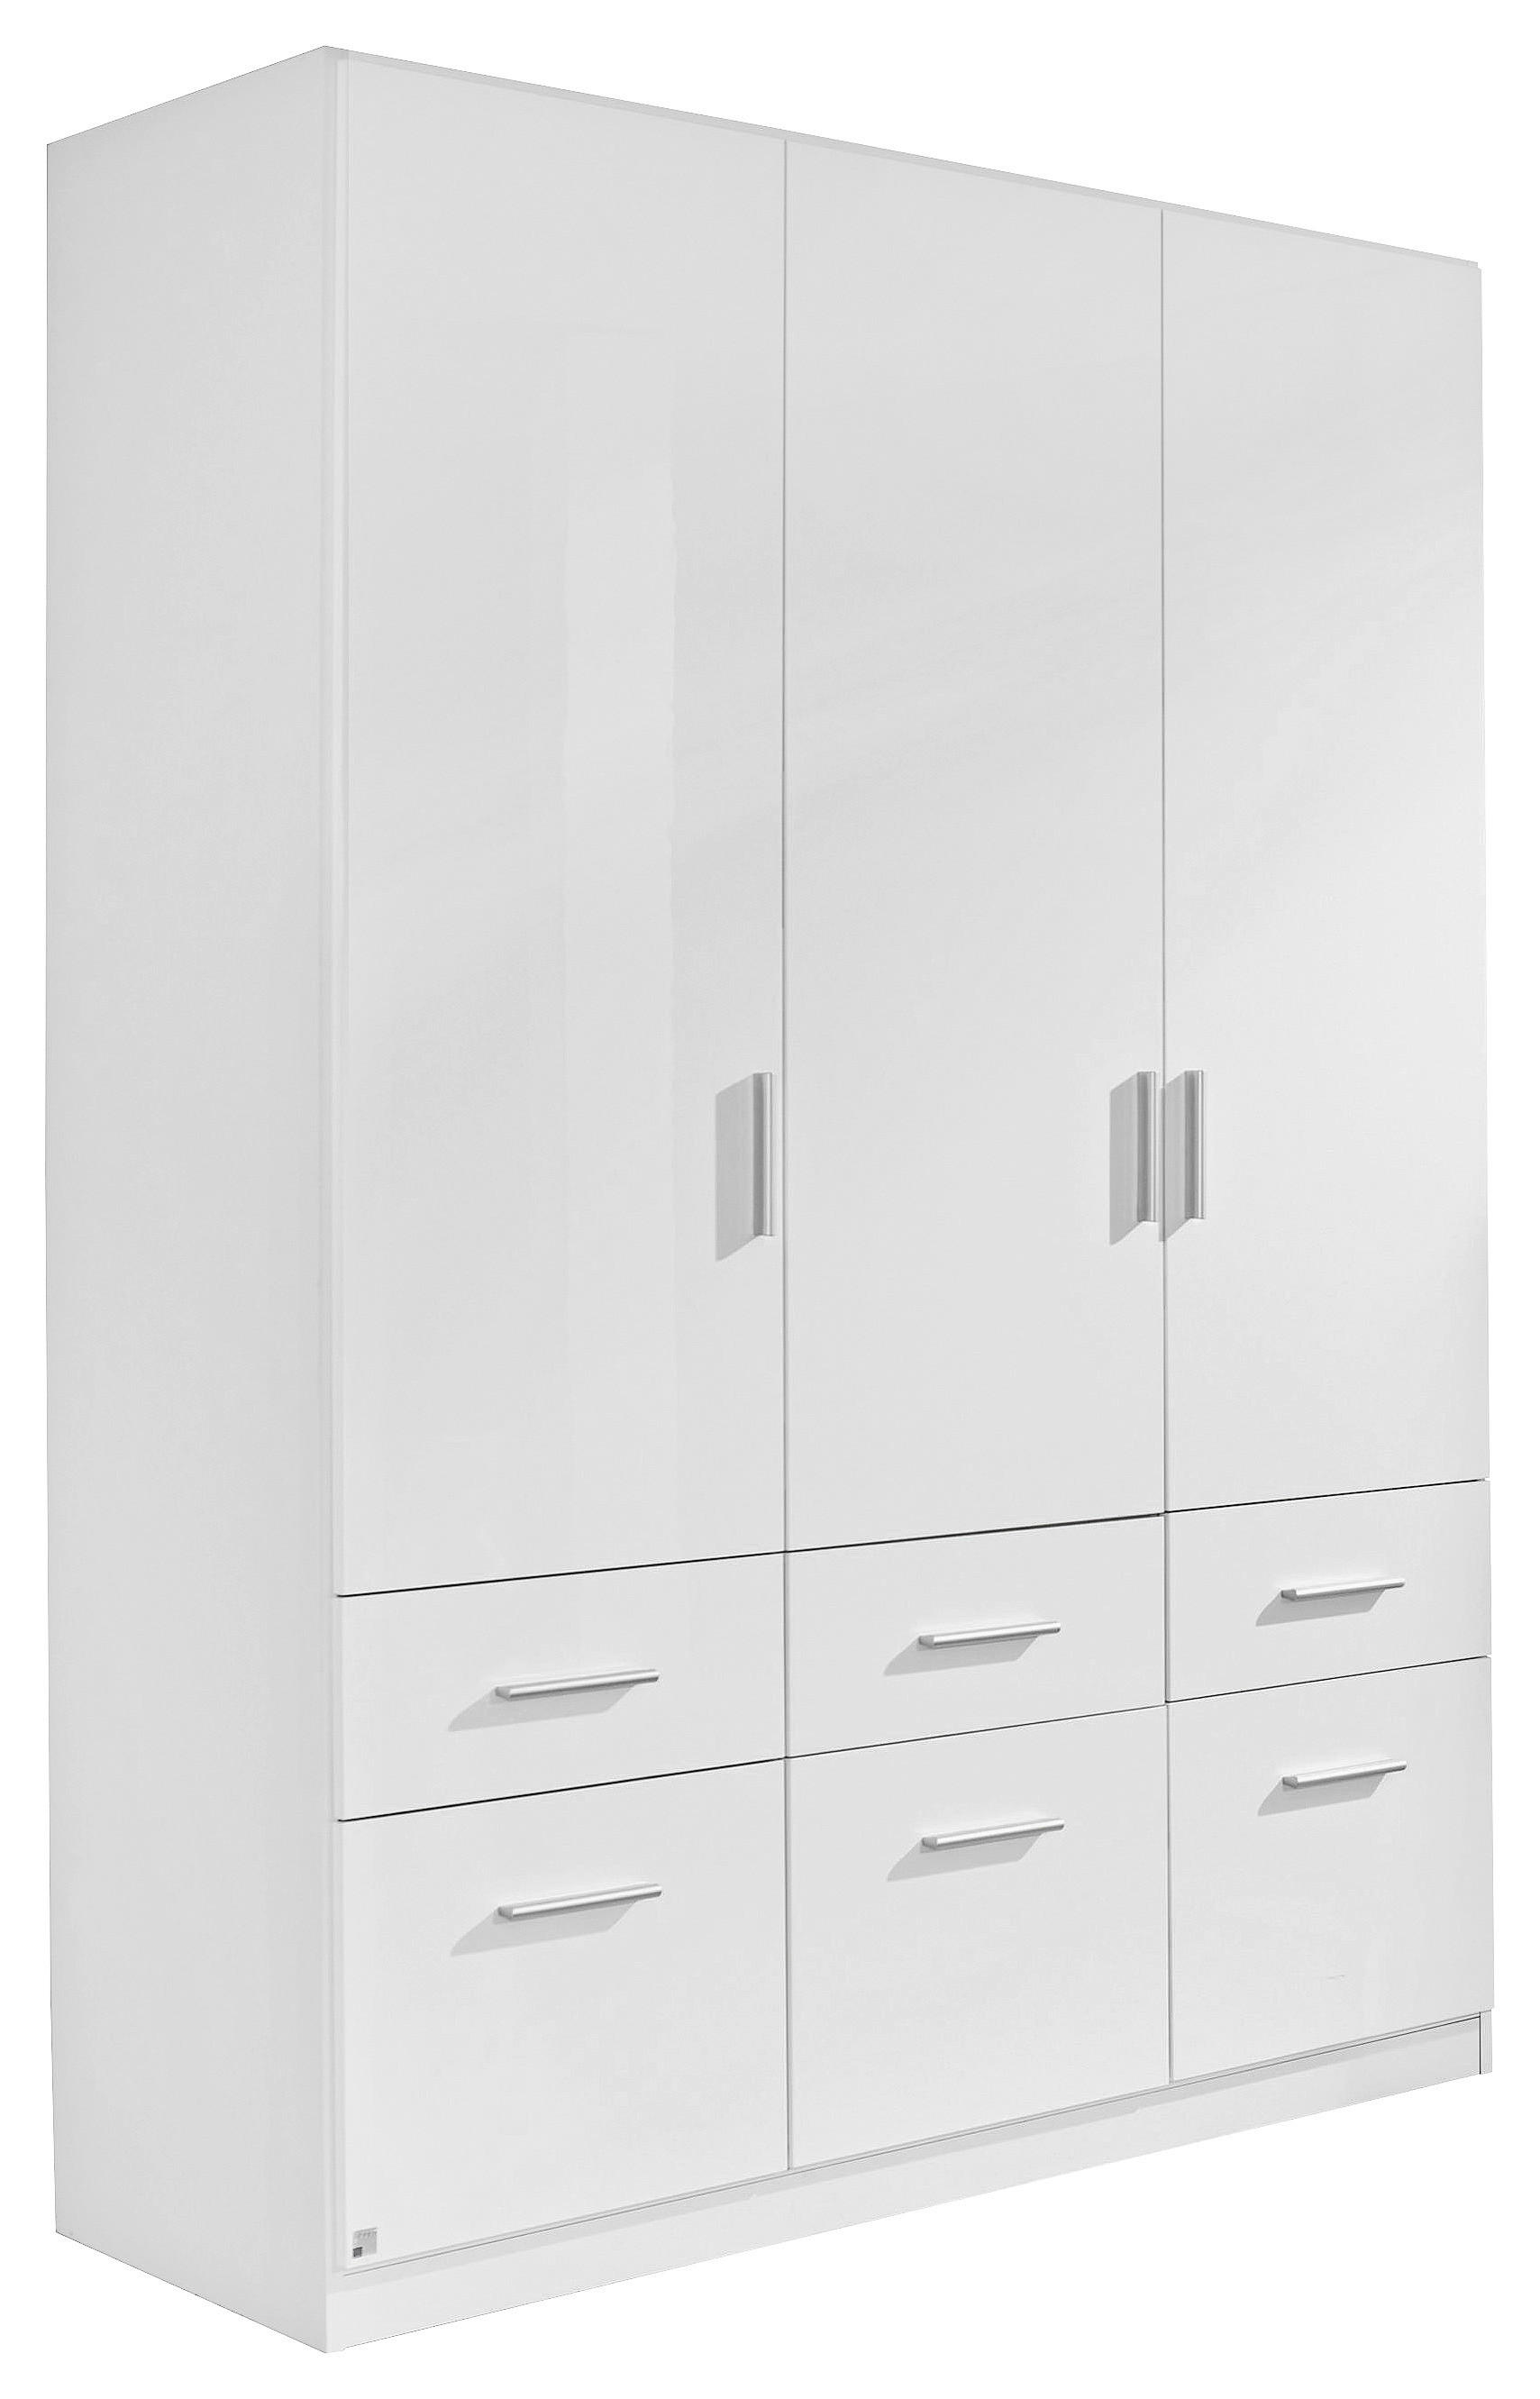 KLEIDERSCHRANK 3-türig Weiß, Weiß hochglanz  - Weiß hochglanz/Alufarben, Design, Holzwerkstoff/Kunststoff (136/197/54cm) - Carryhome